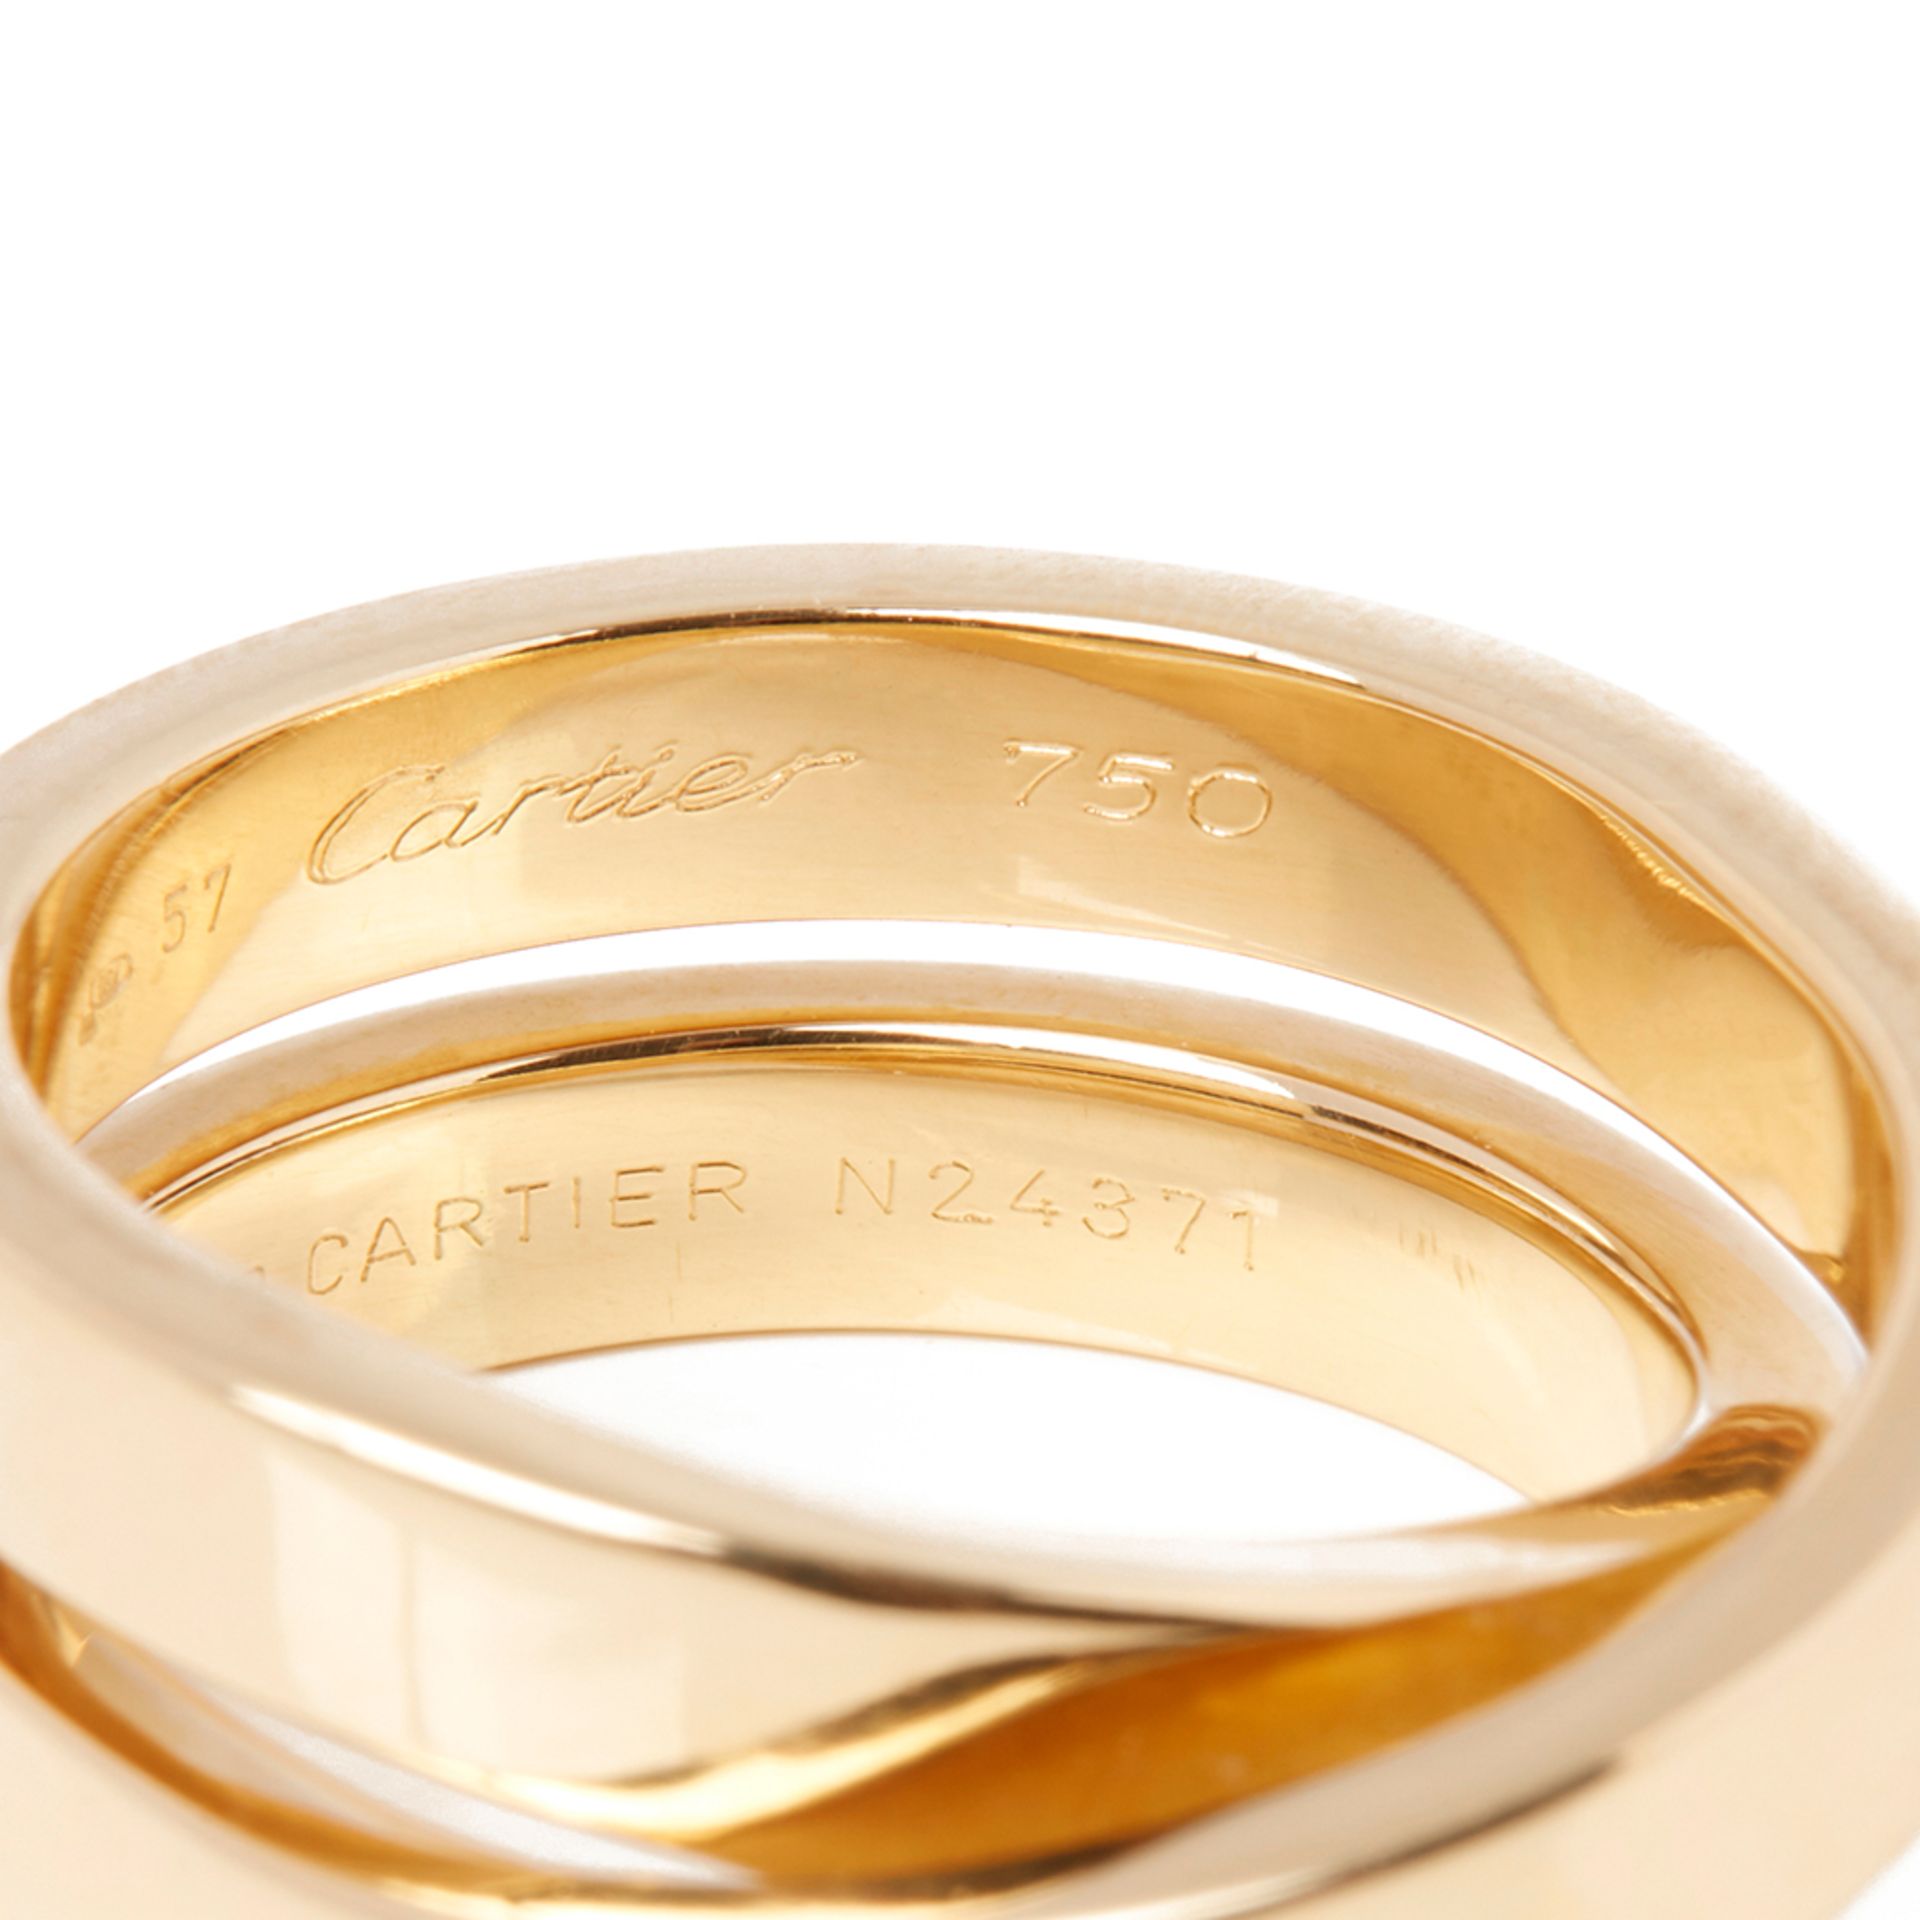 Cartier 18k Yellow Gold Paris Nouvelle Vague Ring - Image 7 of 8